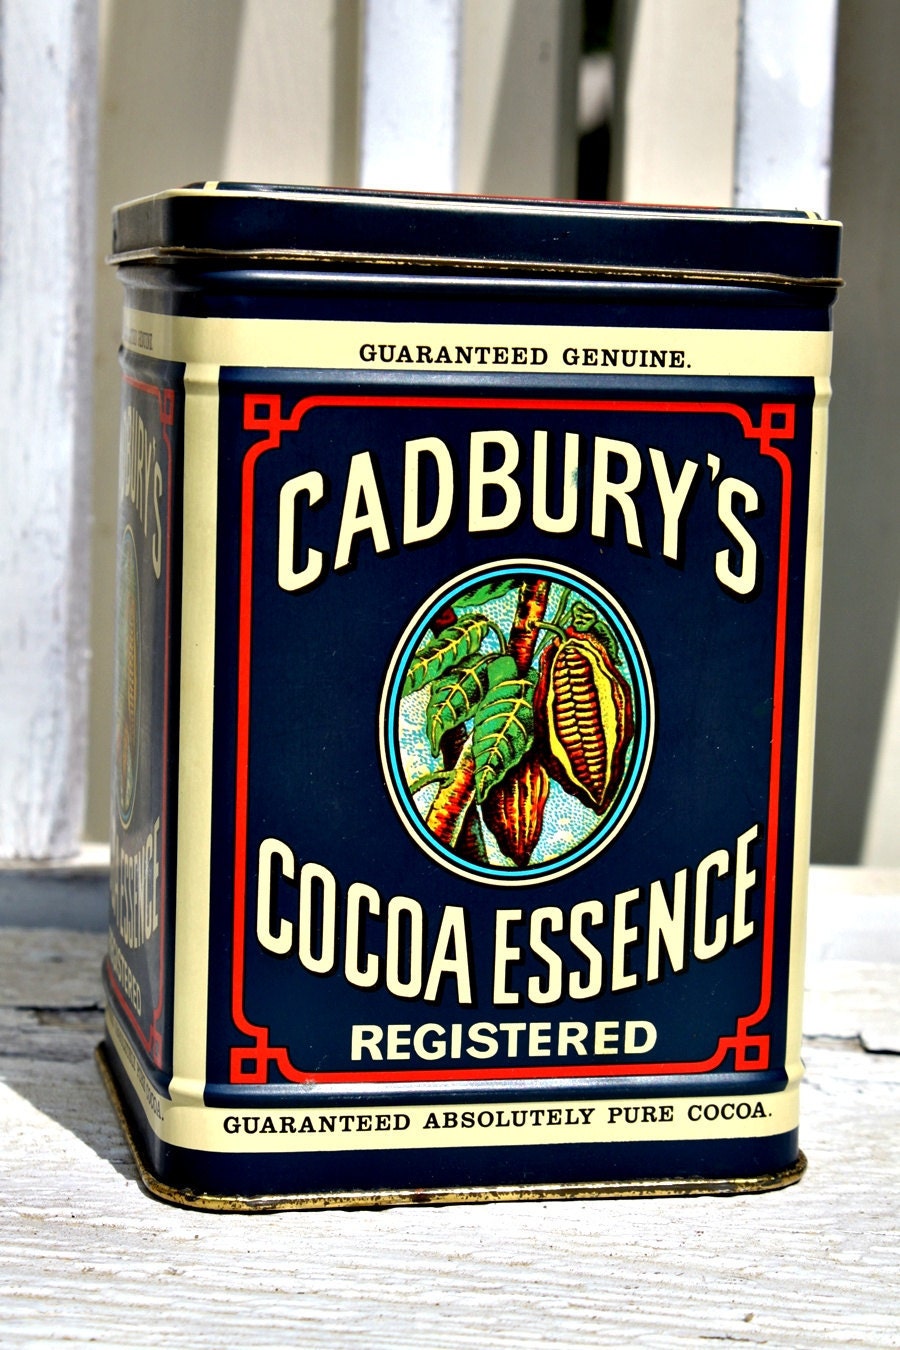 Cocoa Essence